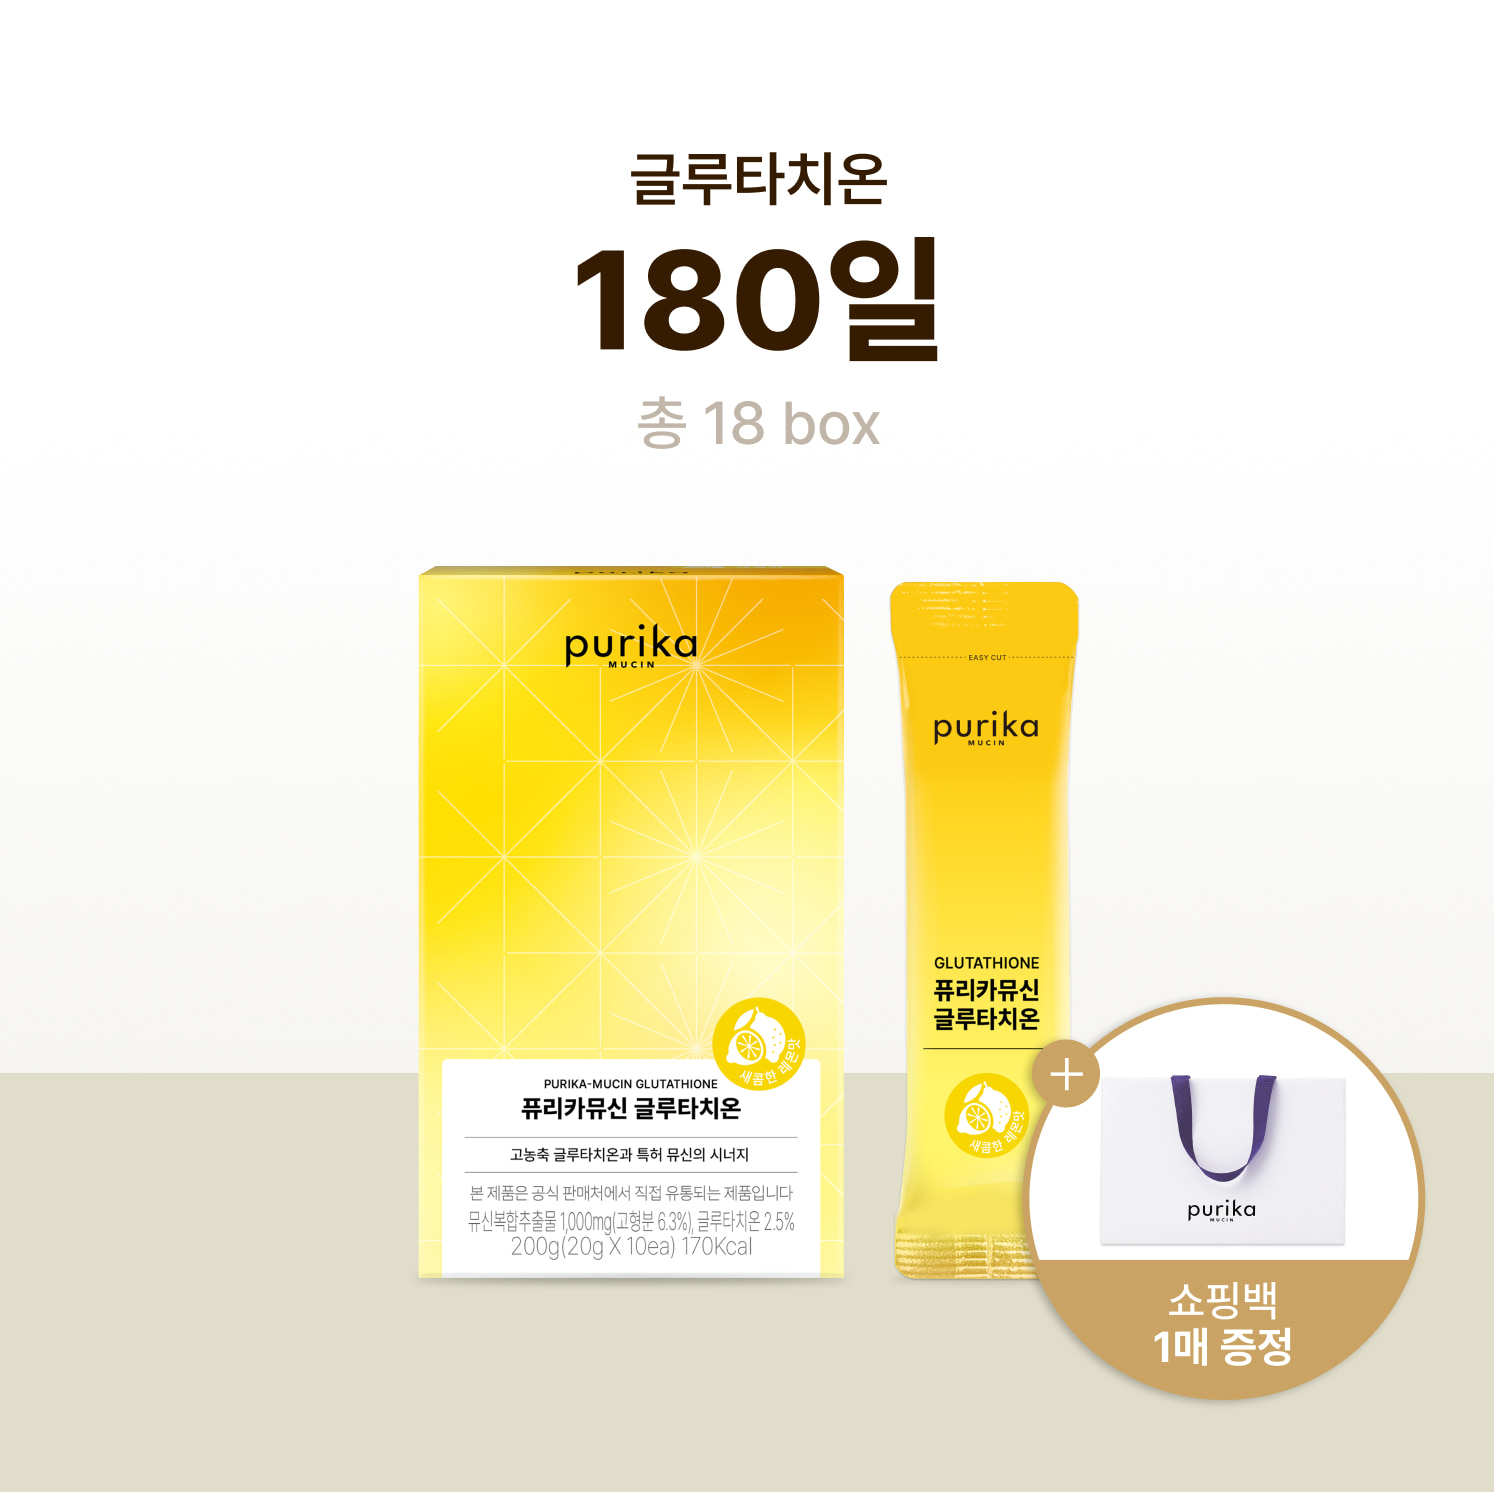 뮤신 글루타치온 (18box, 180일) + 쇼핑백 증정(1매)